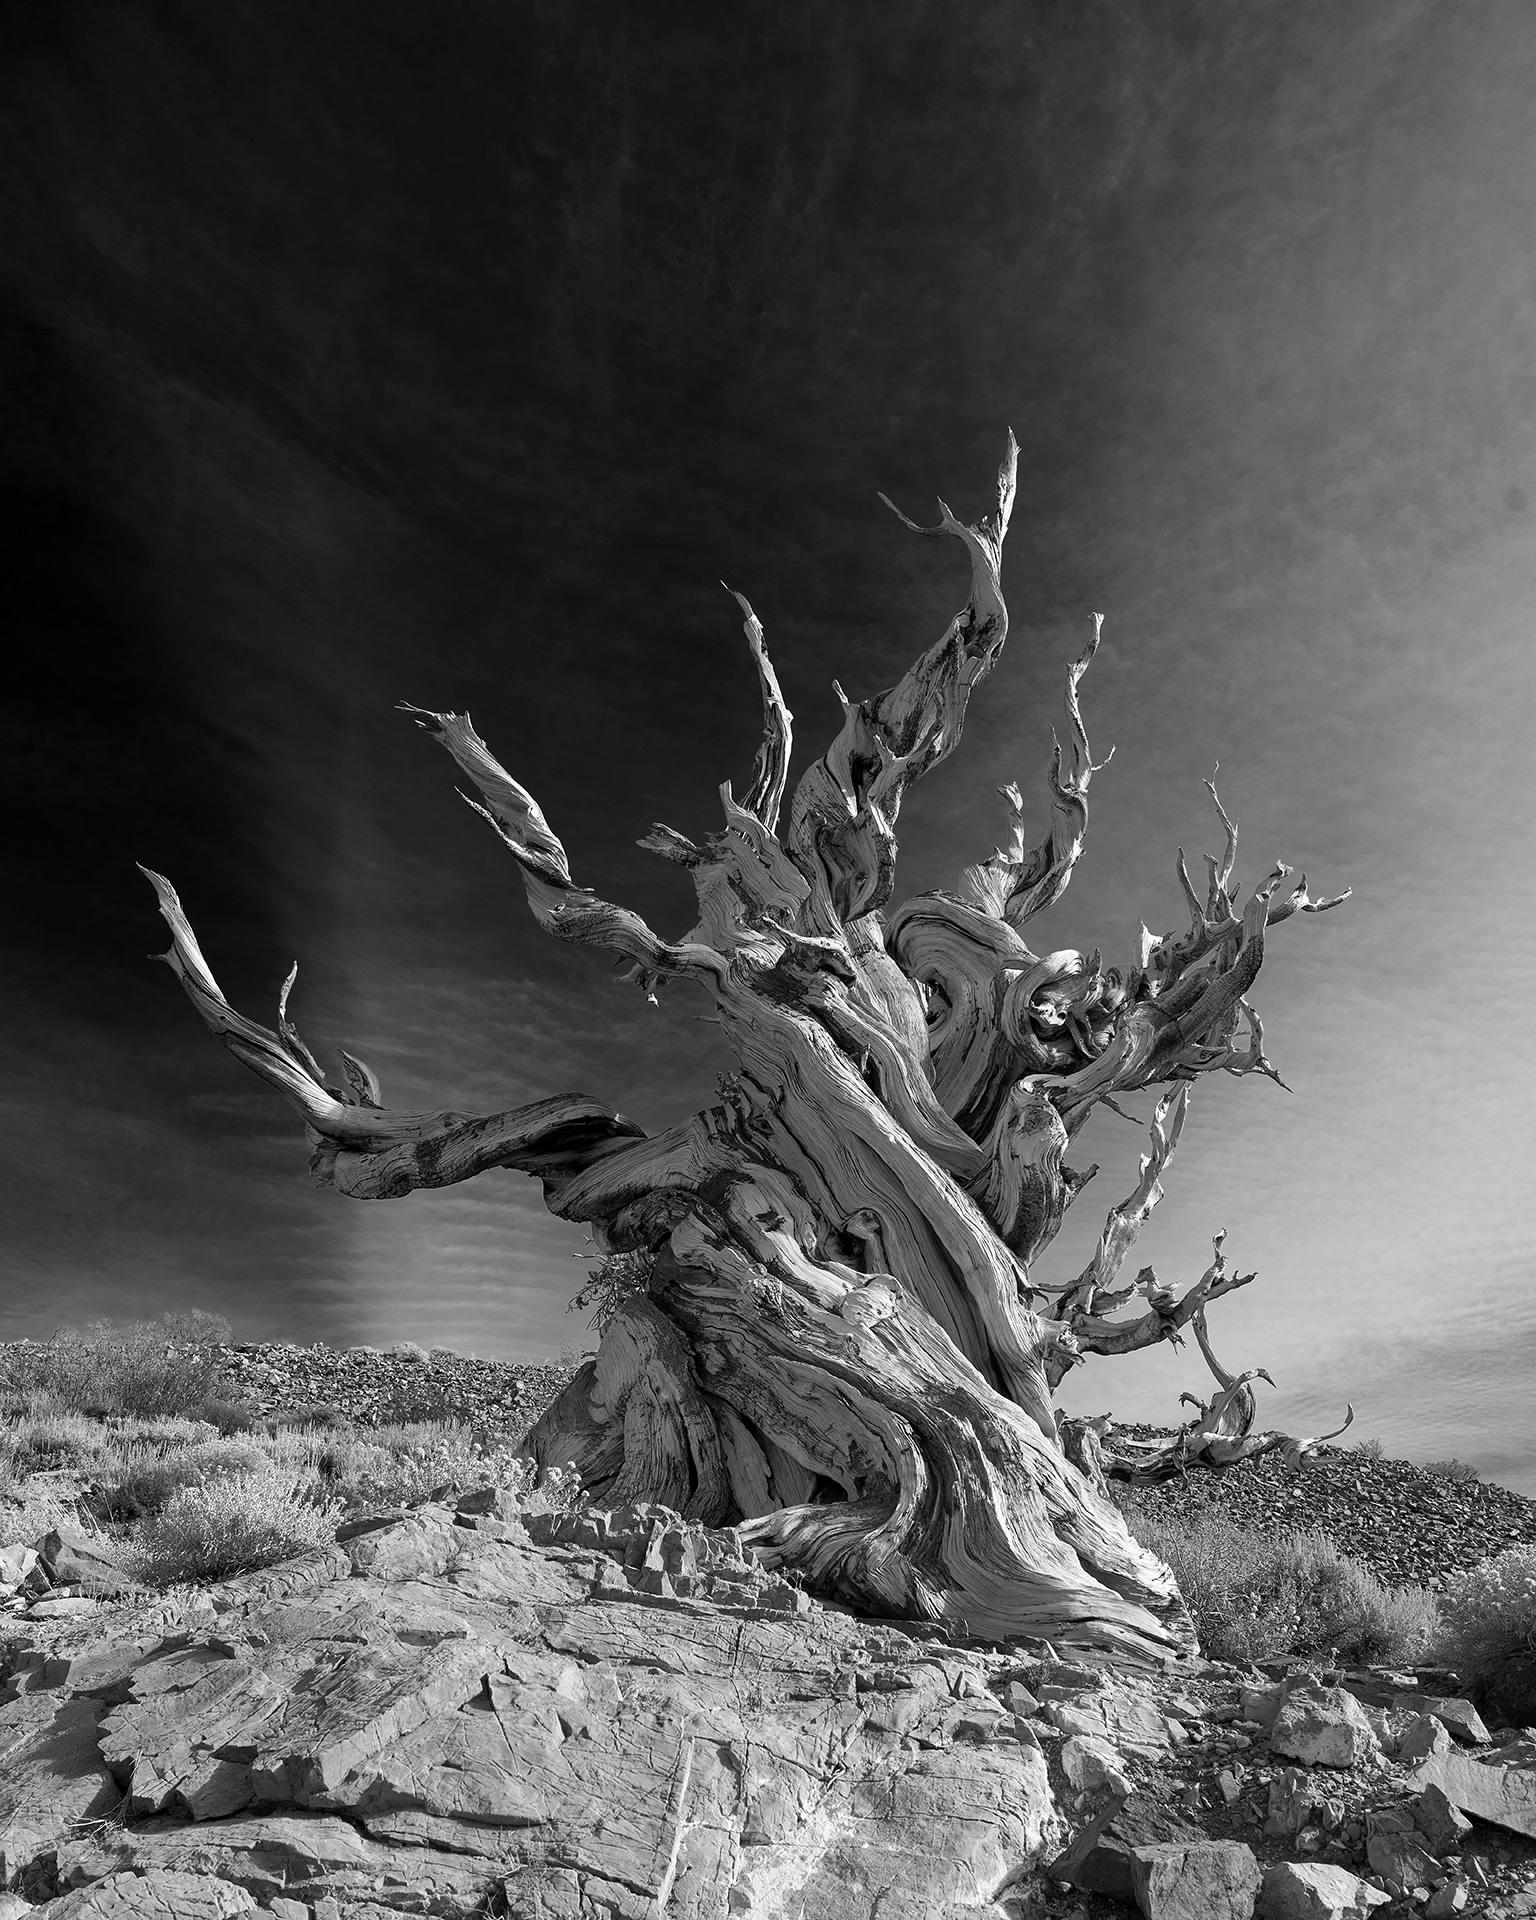 Tree Study V – Großformatige b/w-Fotografie eines einsamen antiken Baumes in Landschaft (Zeitgenössisch), Photograph, von Frank Schott